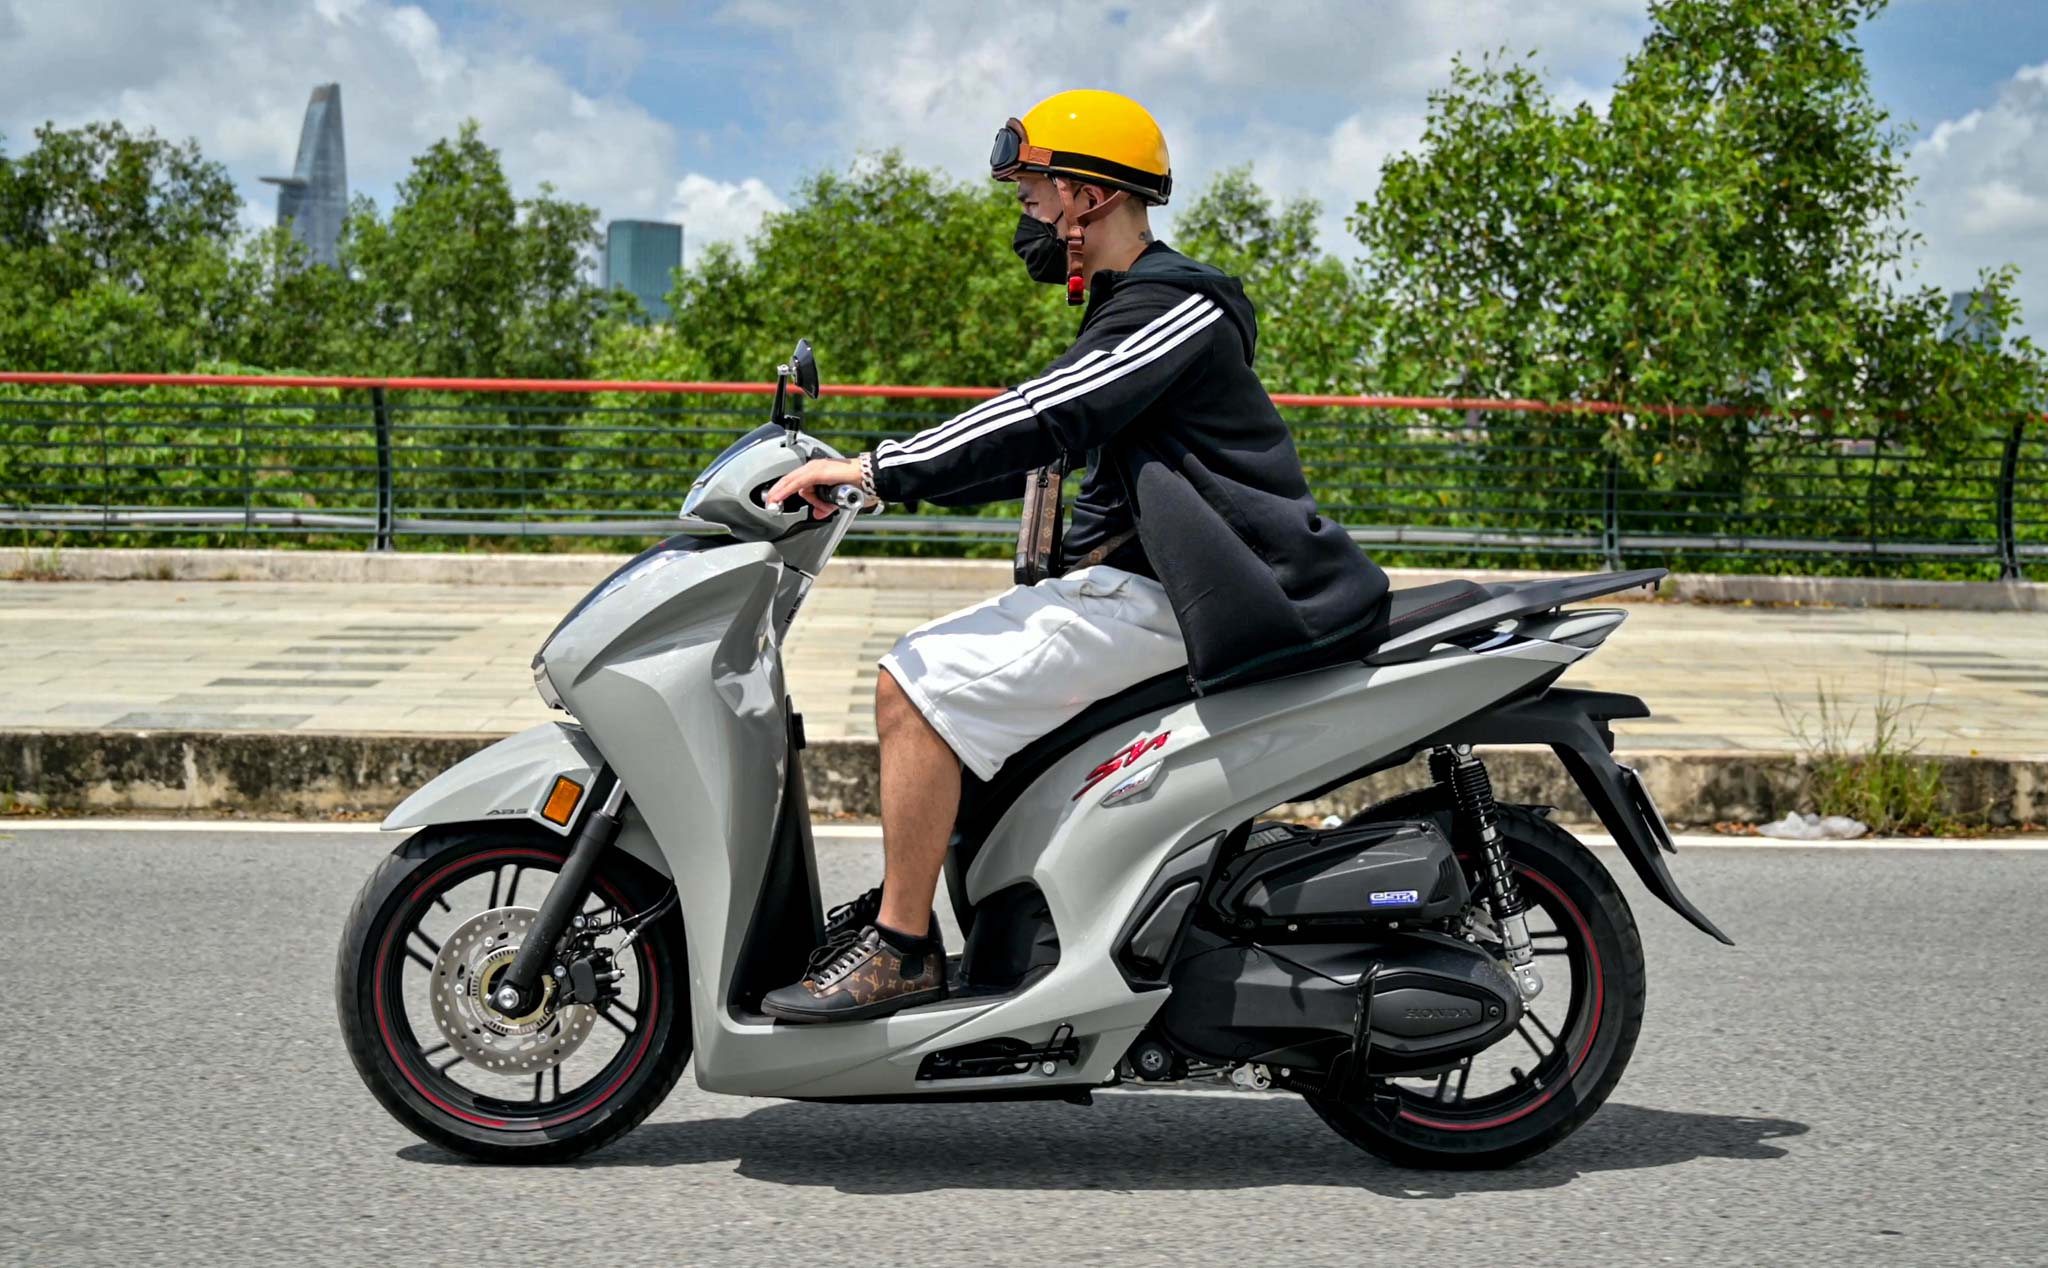 Chi tiết Honda Sh350i 2021 Việt Nam: giá gần 200 triệu, chạy đẹp lắm